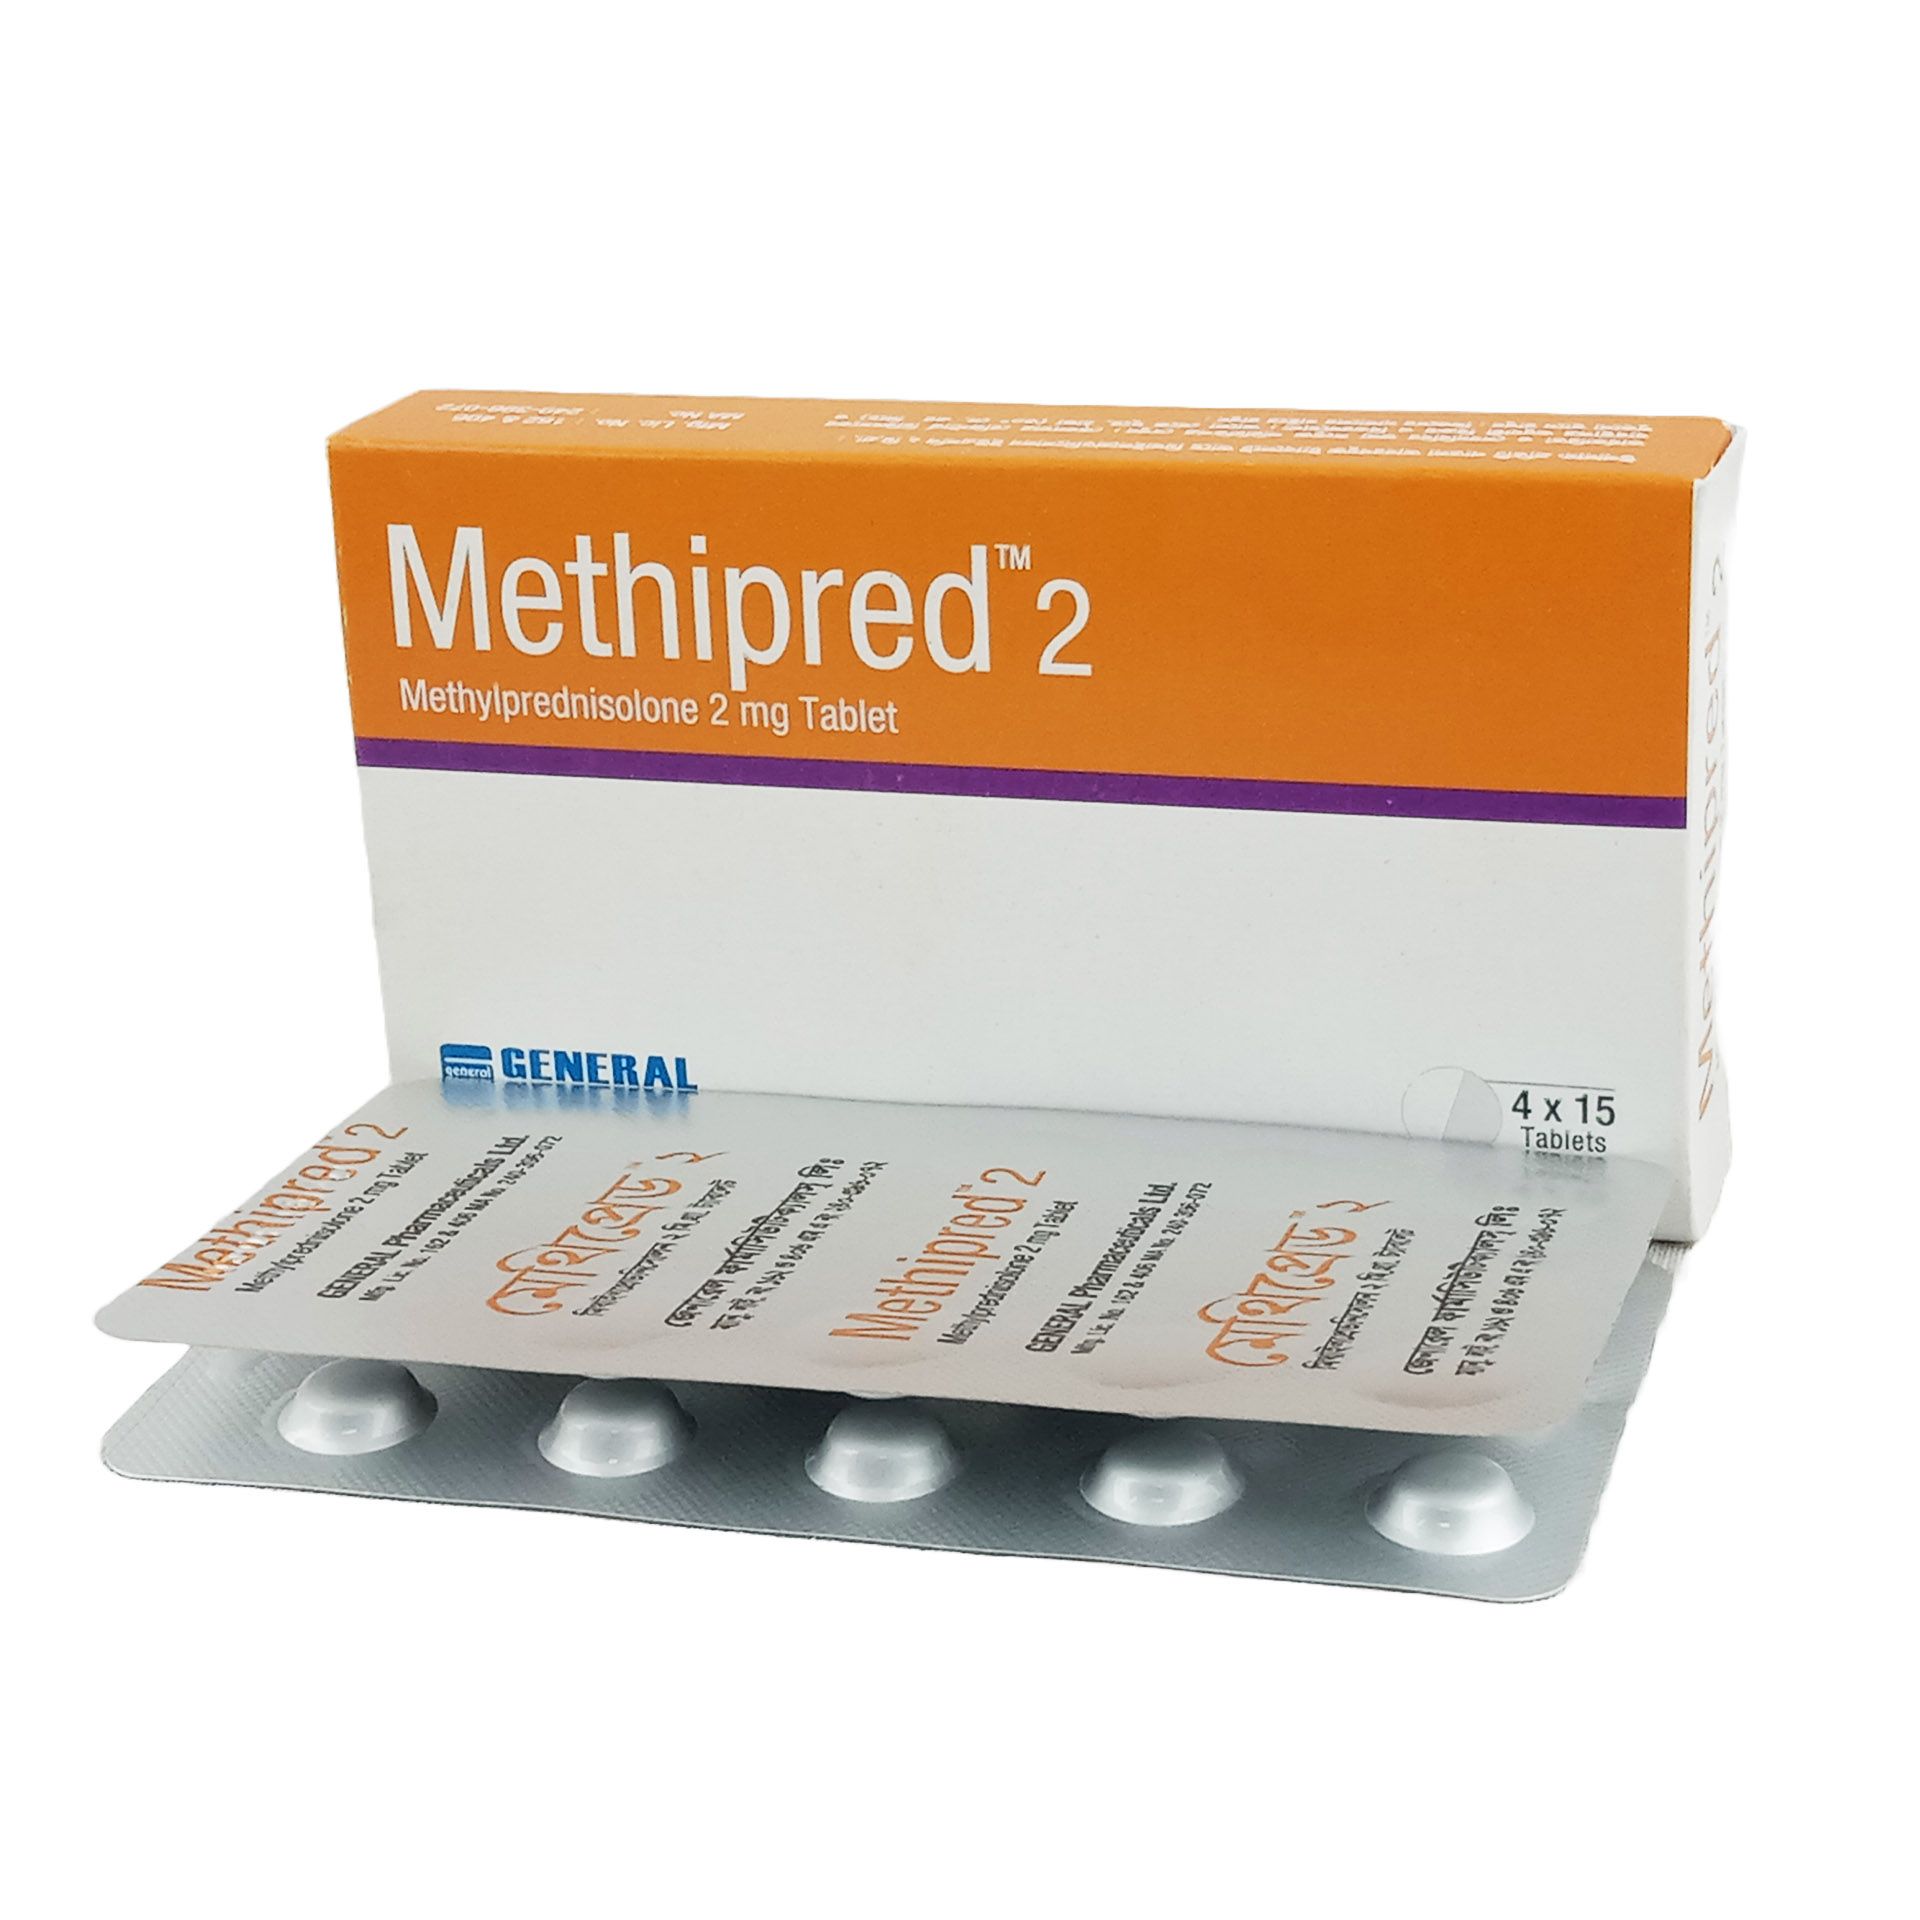 Methipred 2mg Tablet